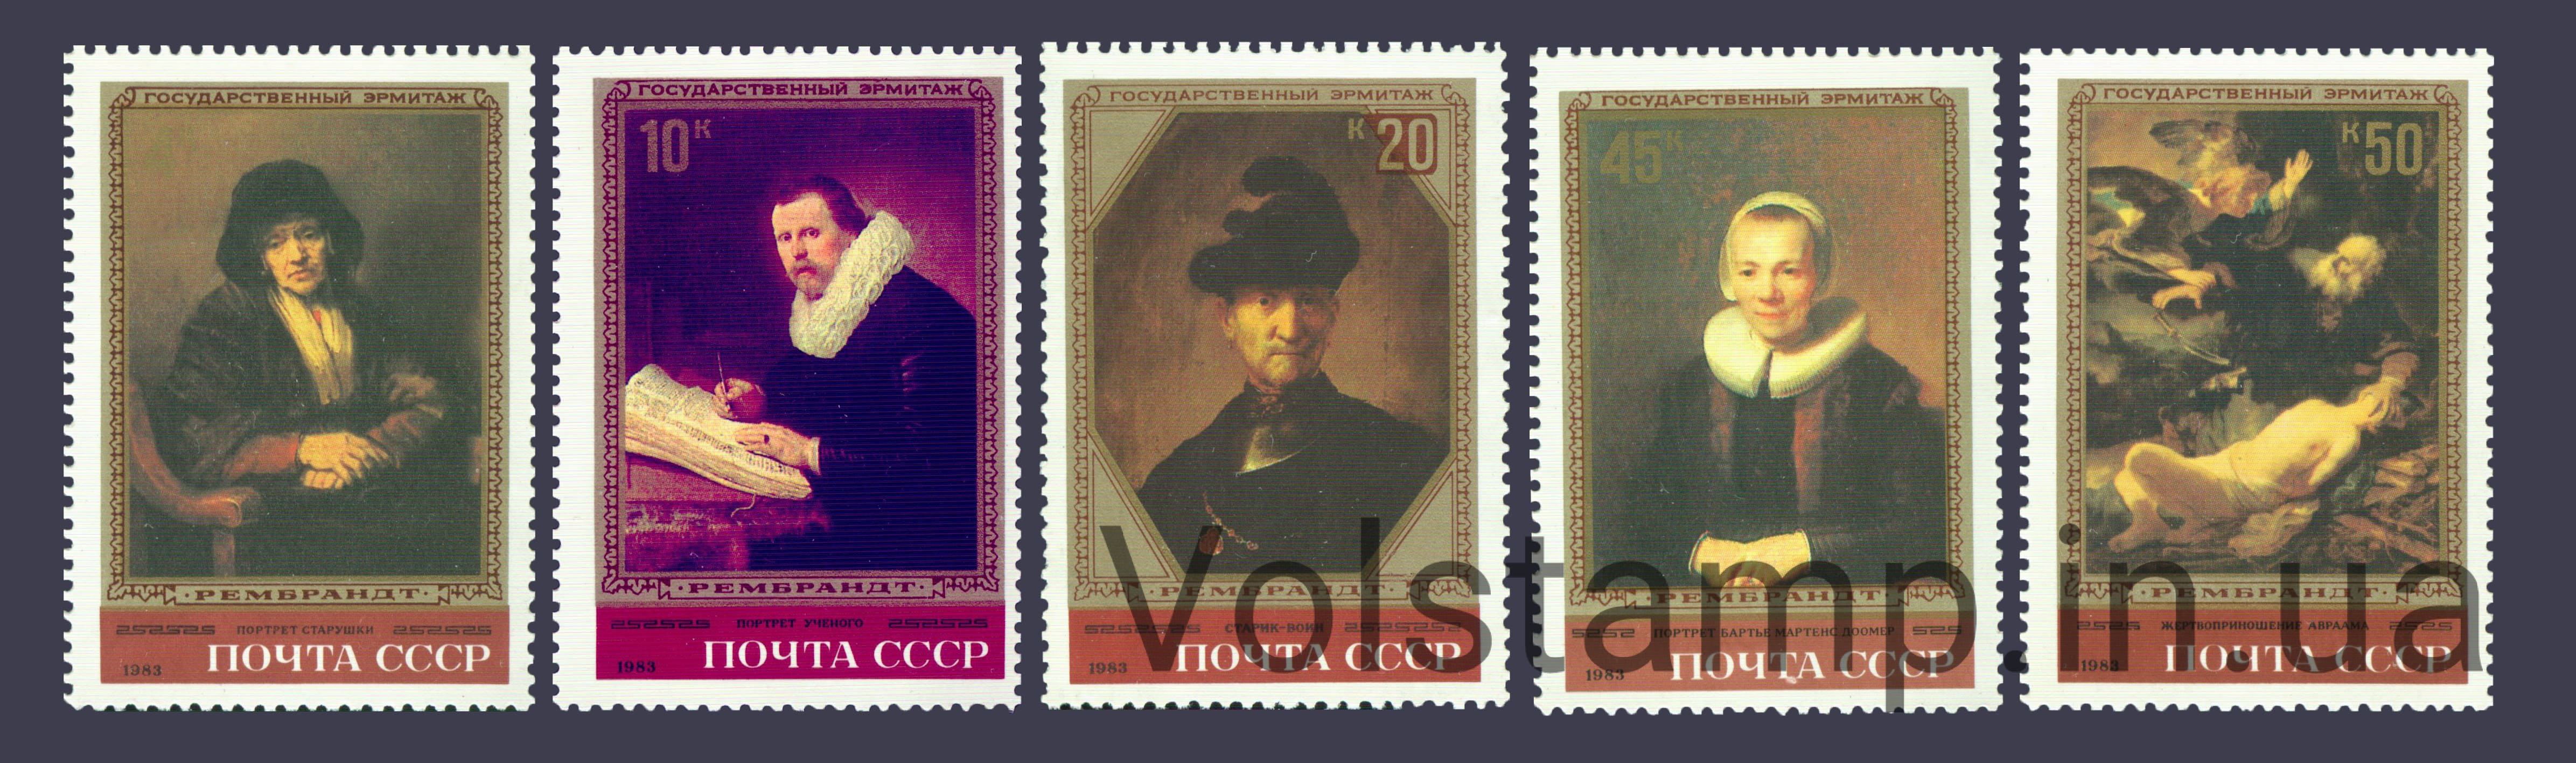 1983 серия марок Шедевры Государственного Эрмитажа. Рембрант Харменс ван Рейн №5310-5314